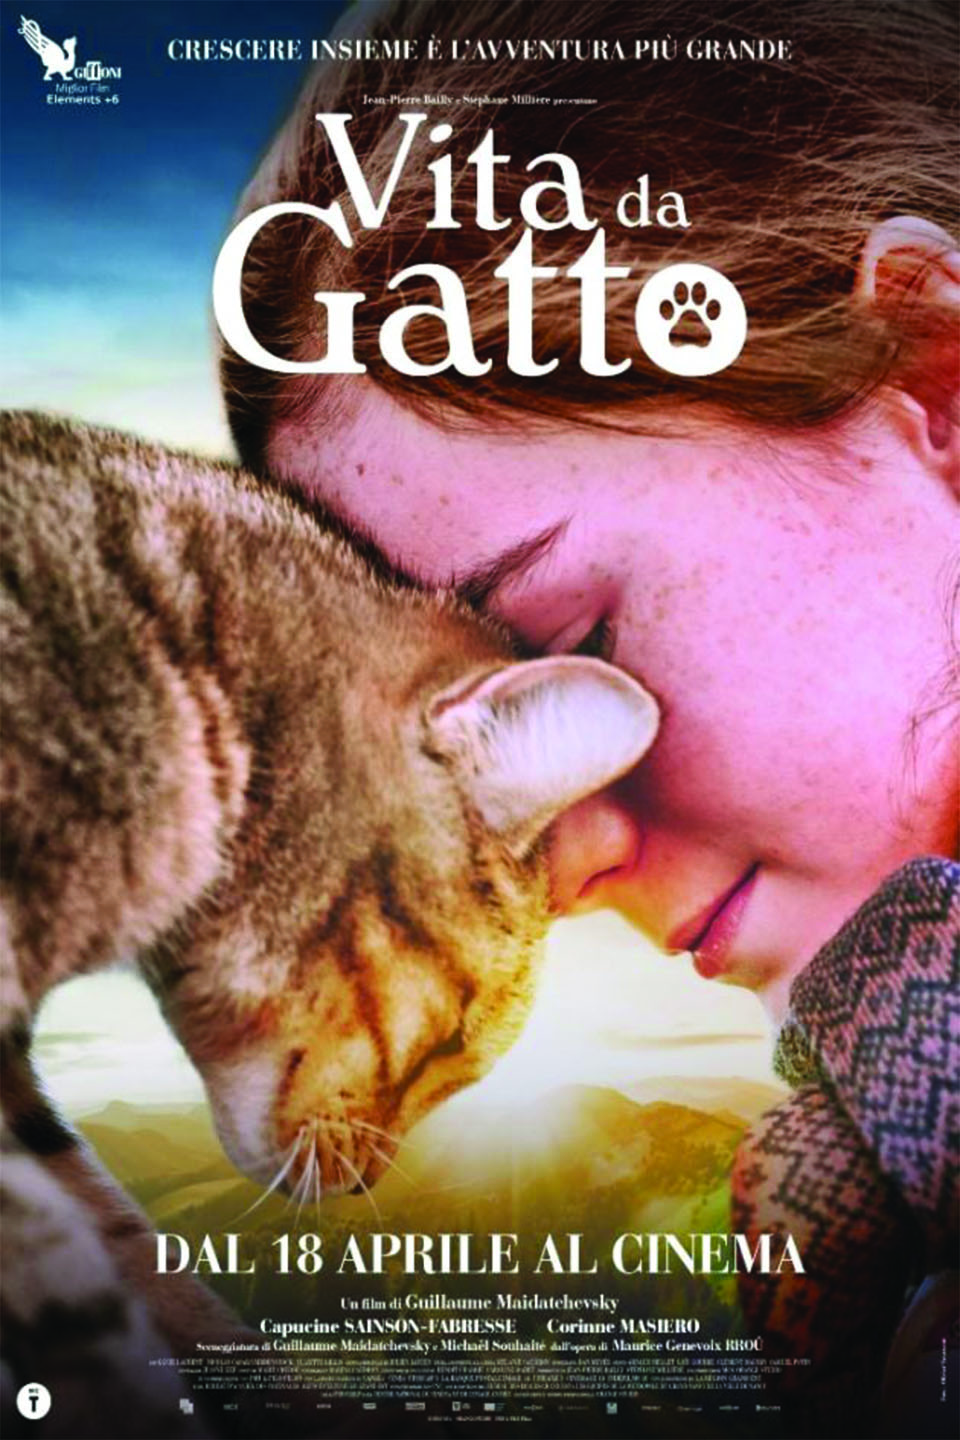 Vita da Gatto